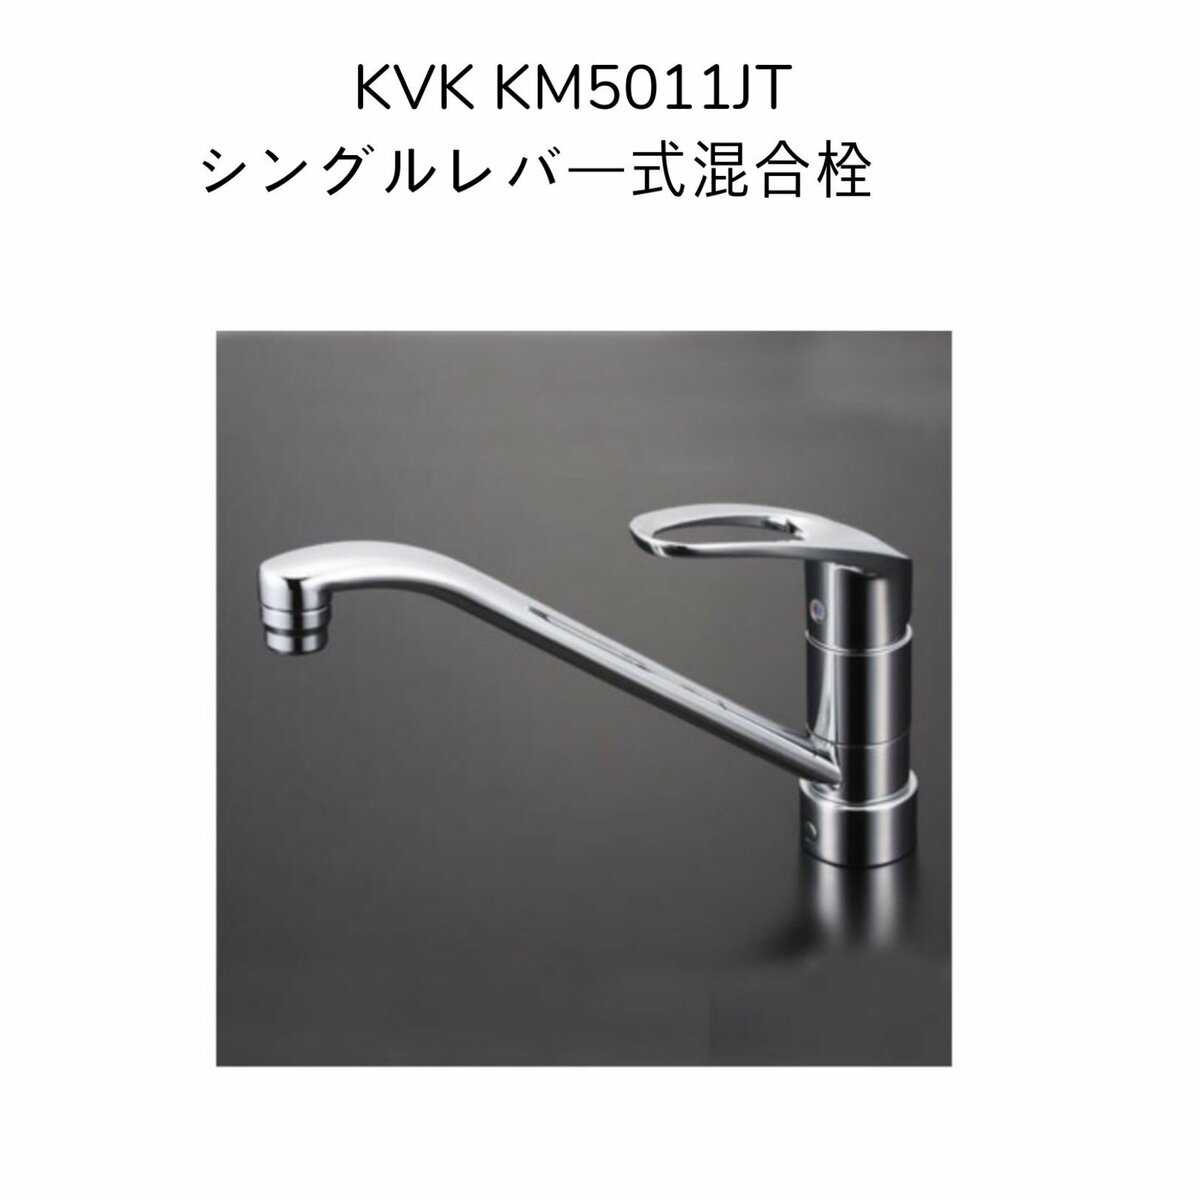 KVK KM5011JT シングルレバー式混合栓  取付穴径φ35〜39対応 混合水栓 湯水 キッチン水栓 台所水栓 流し台用水栓 1つ穴